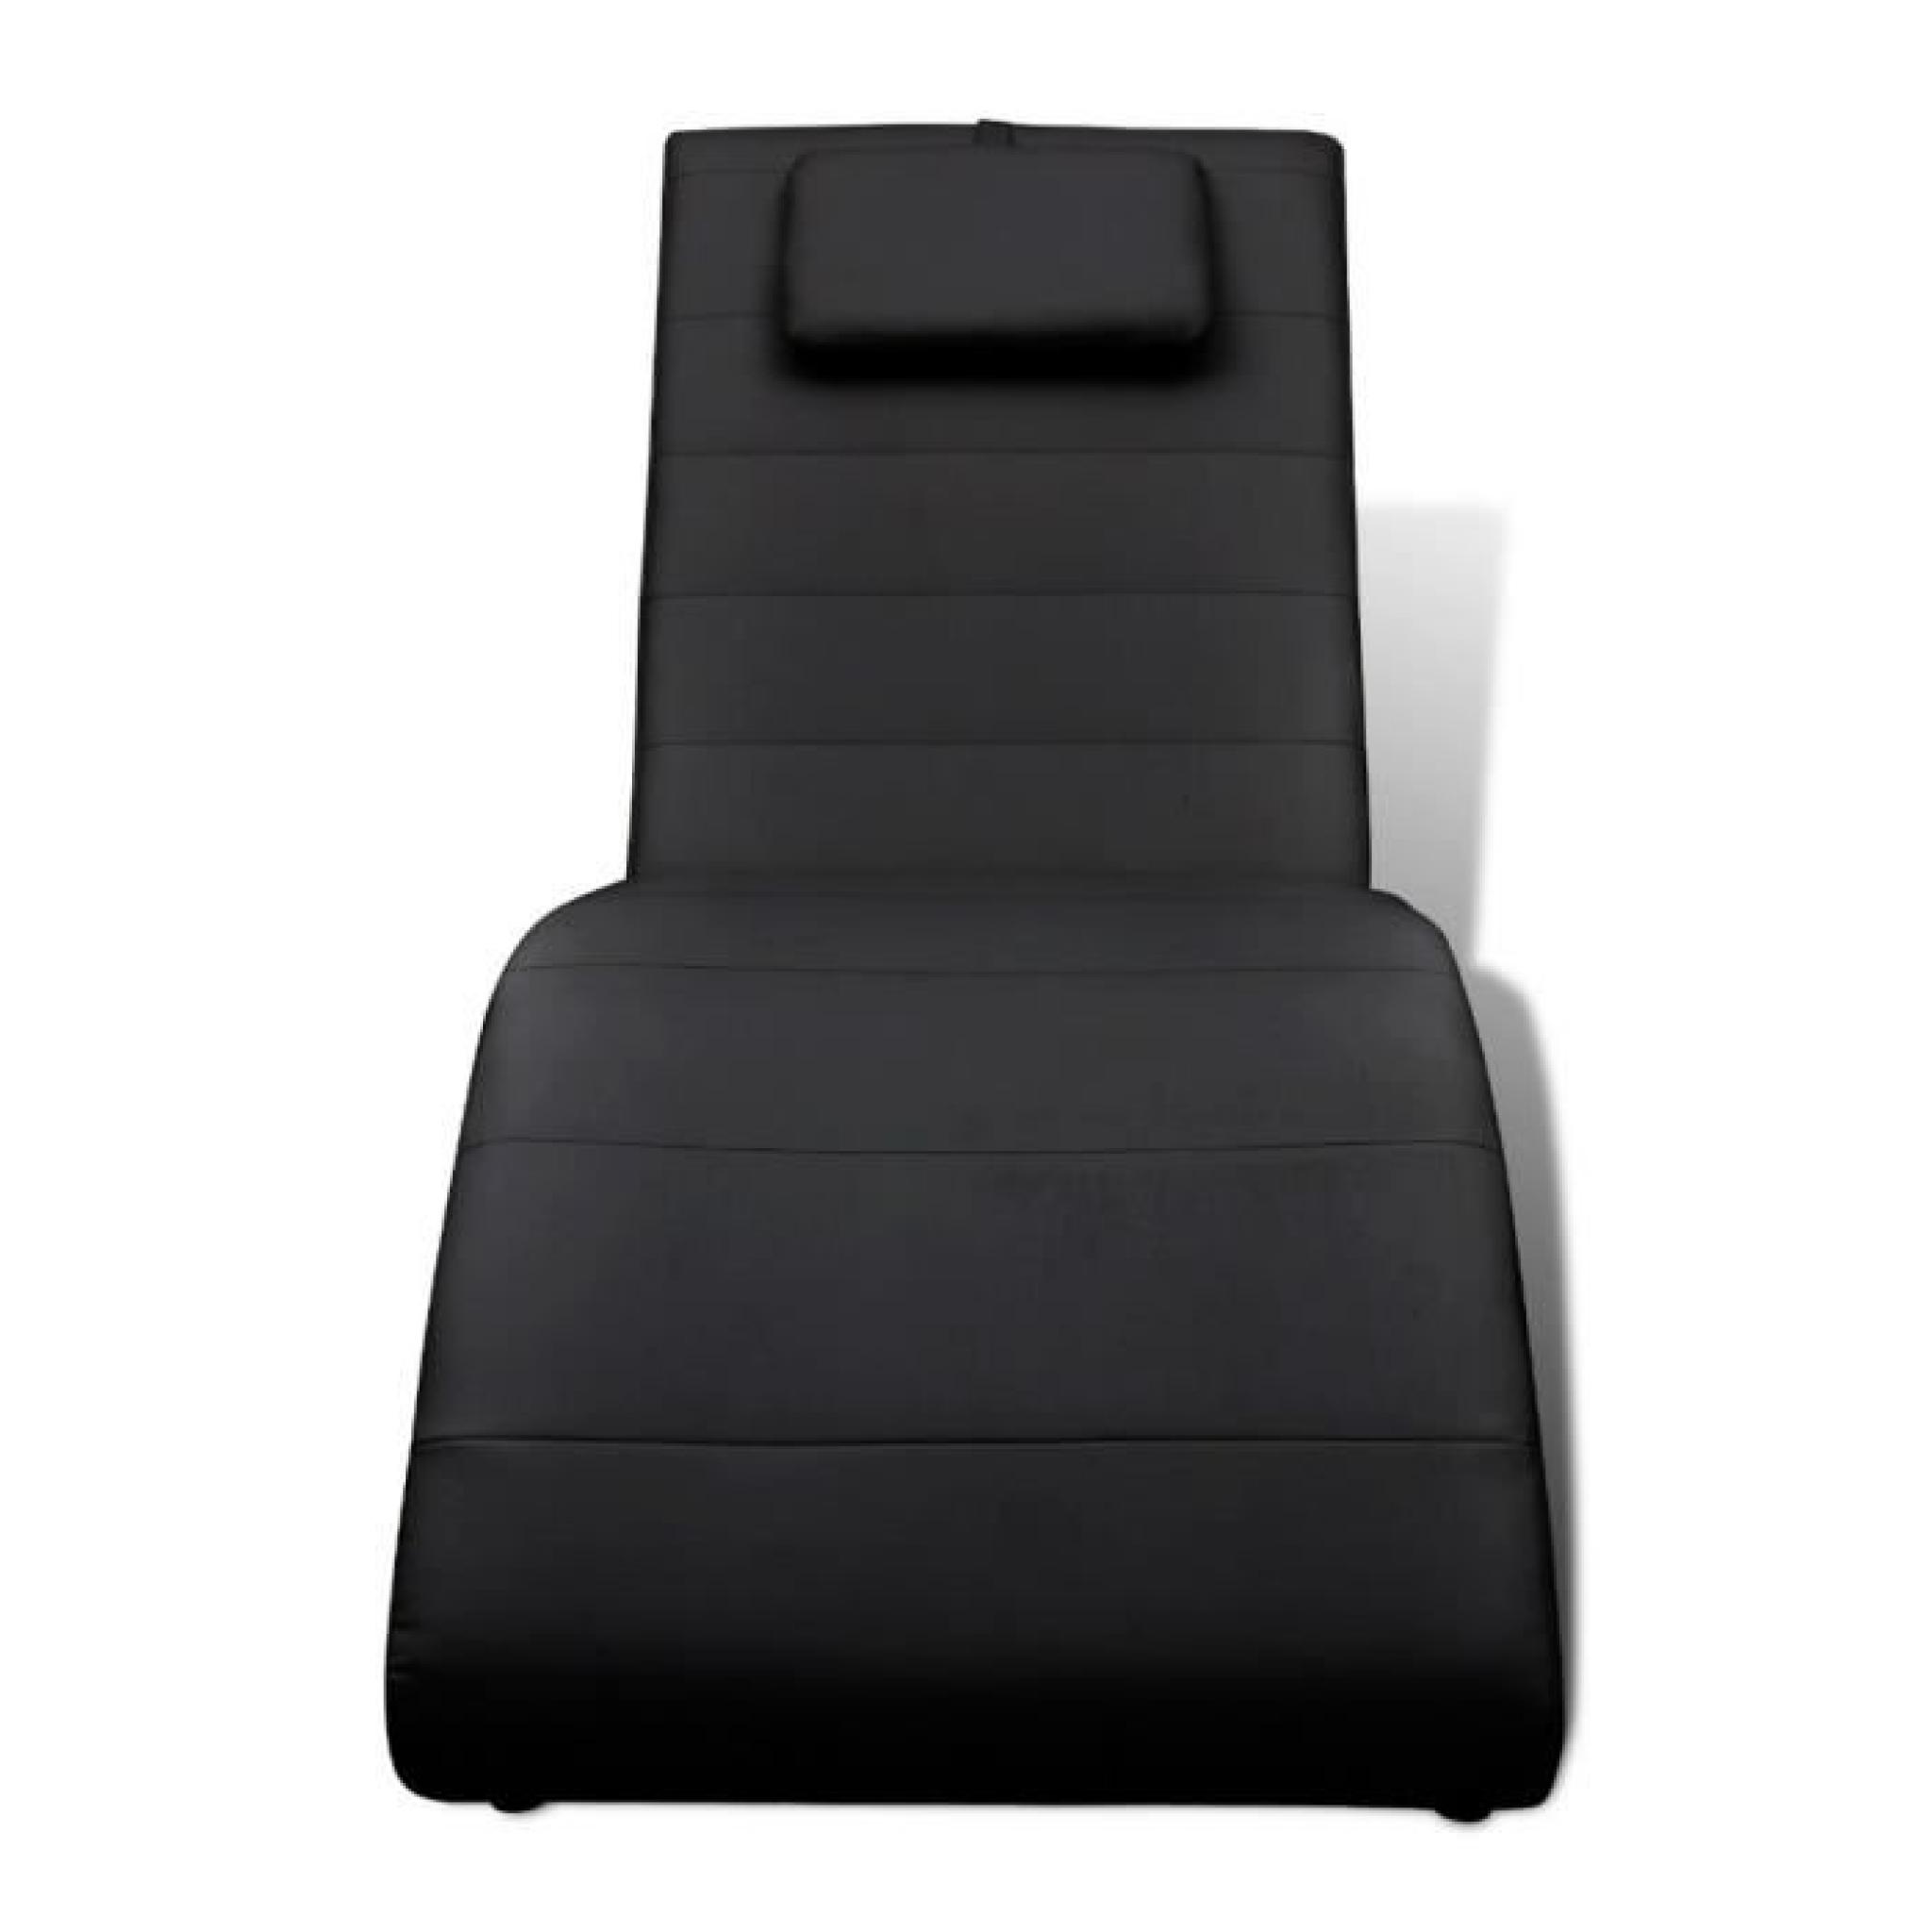 Magnifique Chaise longue noire avec 2 pieds et appui-tete